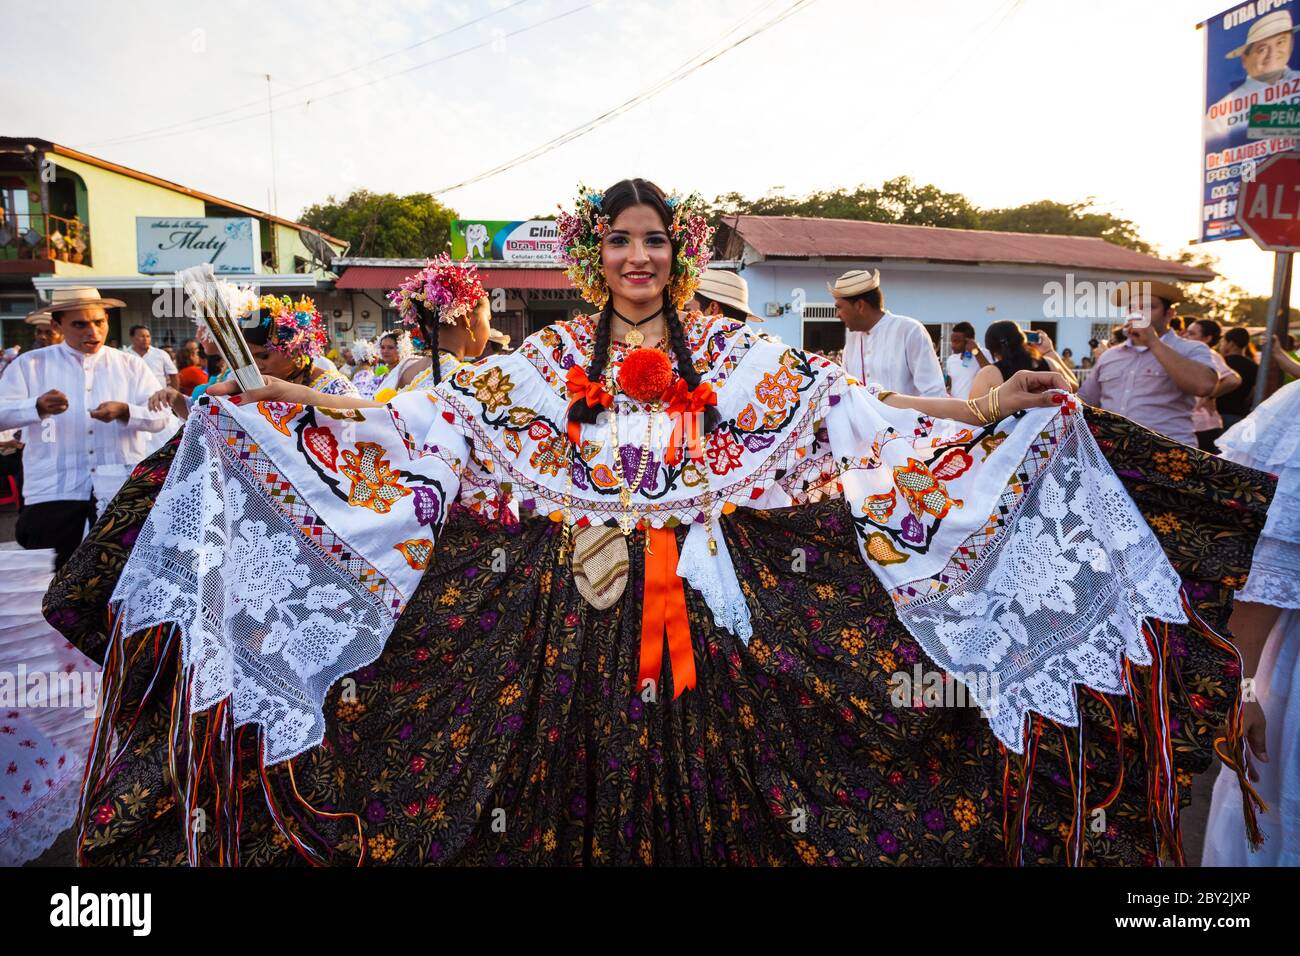 Donna a pollera in occasione della celebrazione annuale 'El Desfile de las MIL Polleras' a Las Tablas, provincia di Los Santos, Repubblica di Panama. Foto Stock